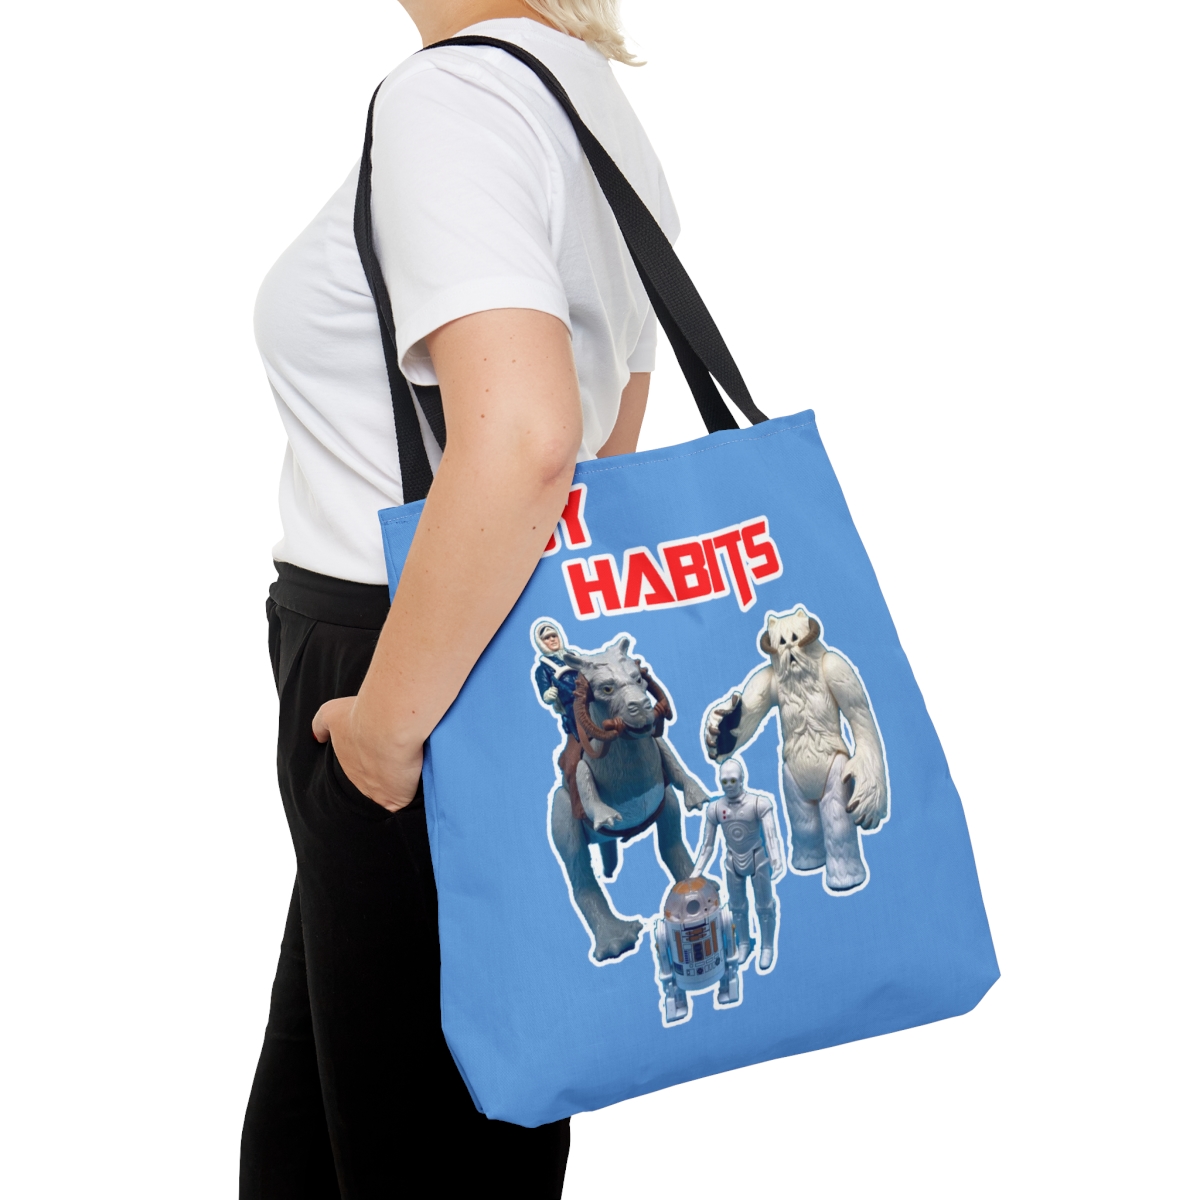 Hoth Tote Bag product thumbnail image